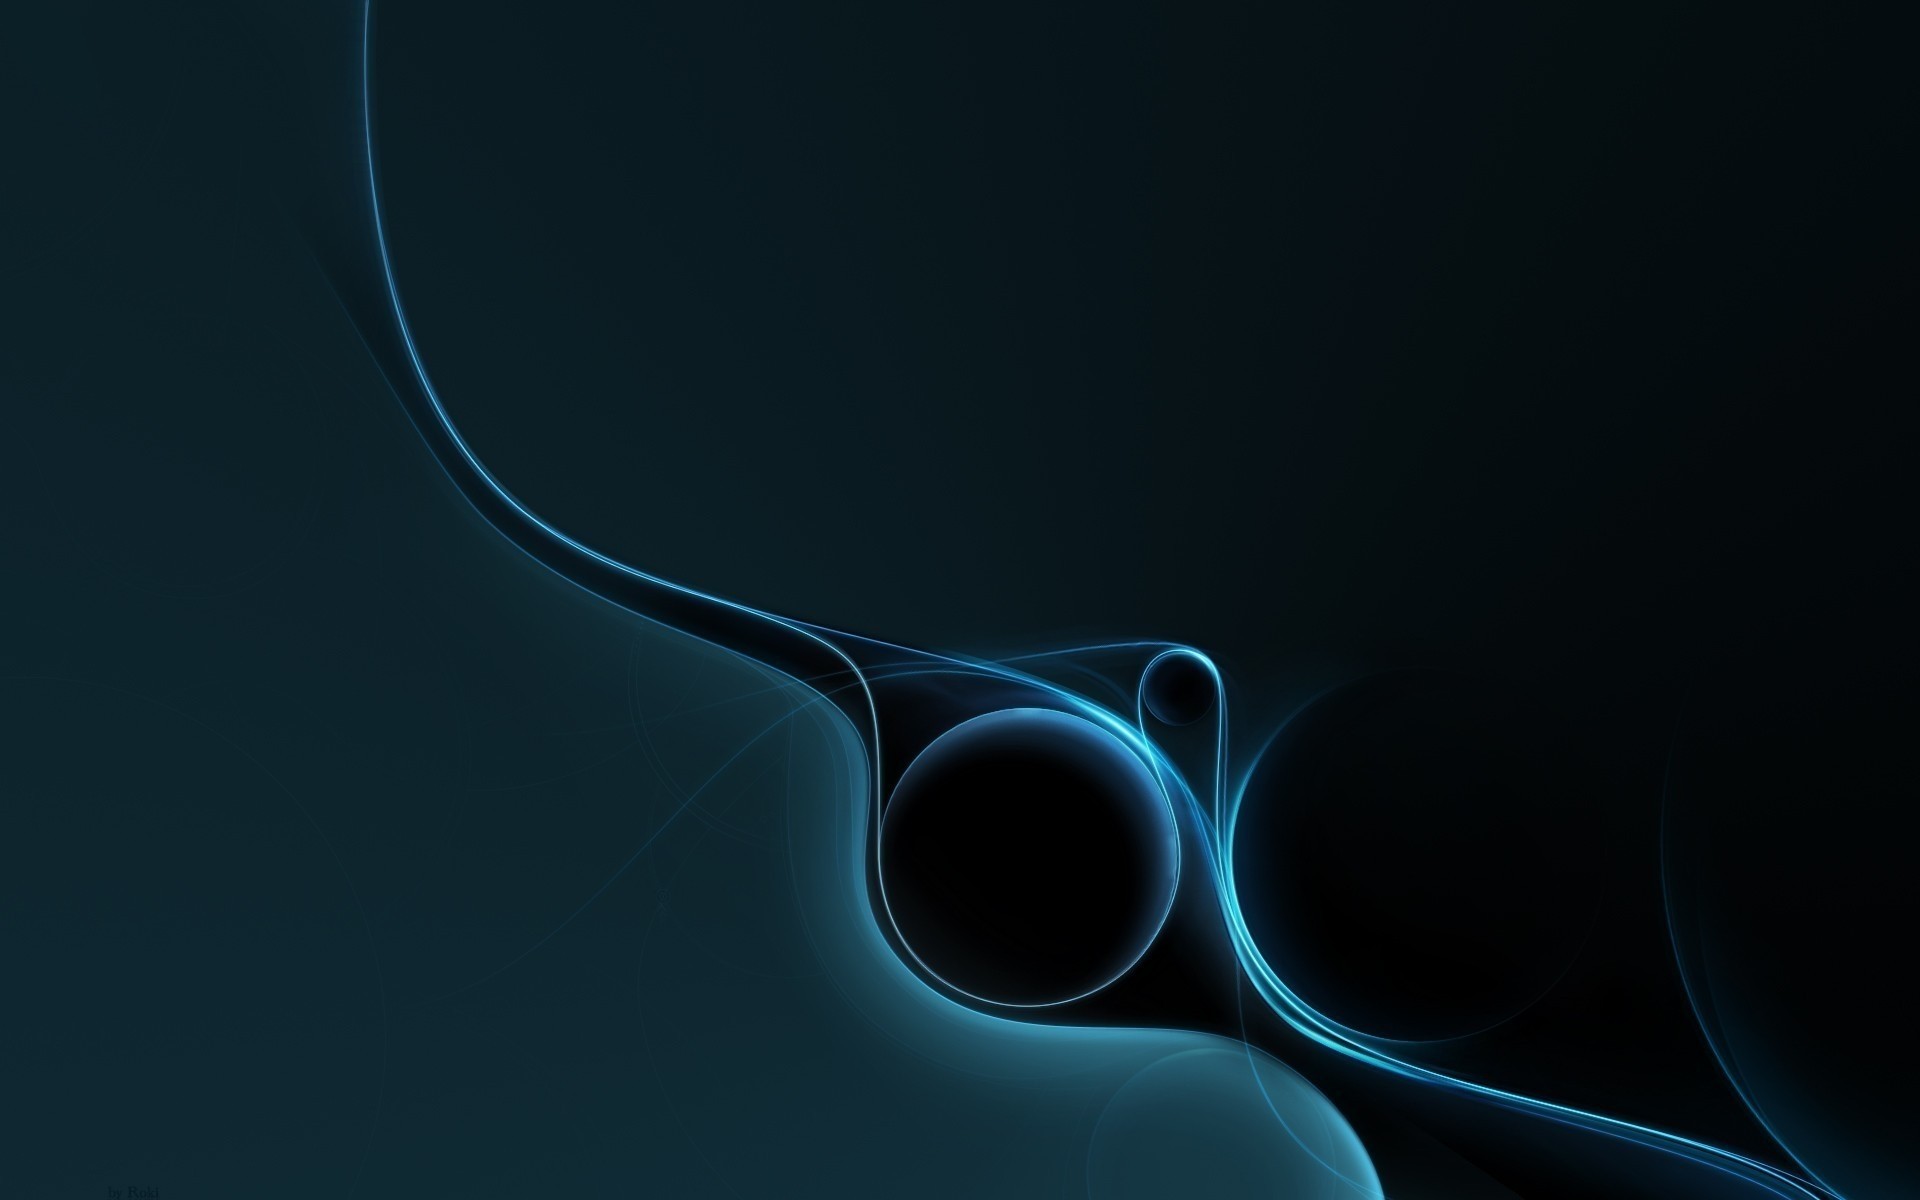 абстракция рабочего стола темный свет цвет иллюстрация искусство график наука формы современные фон текстура пространство энергии дизайн обои круги линии